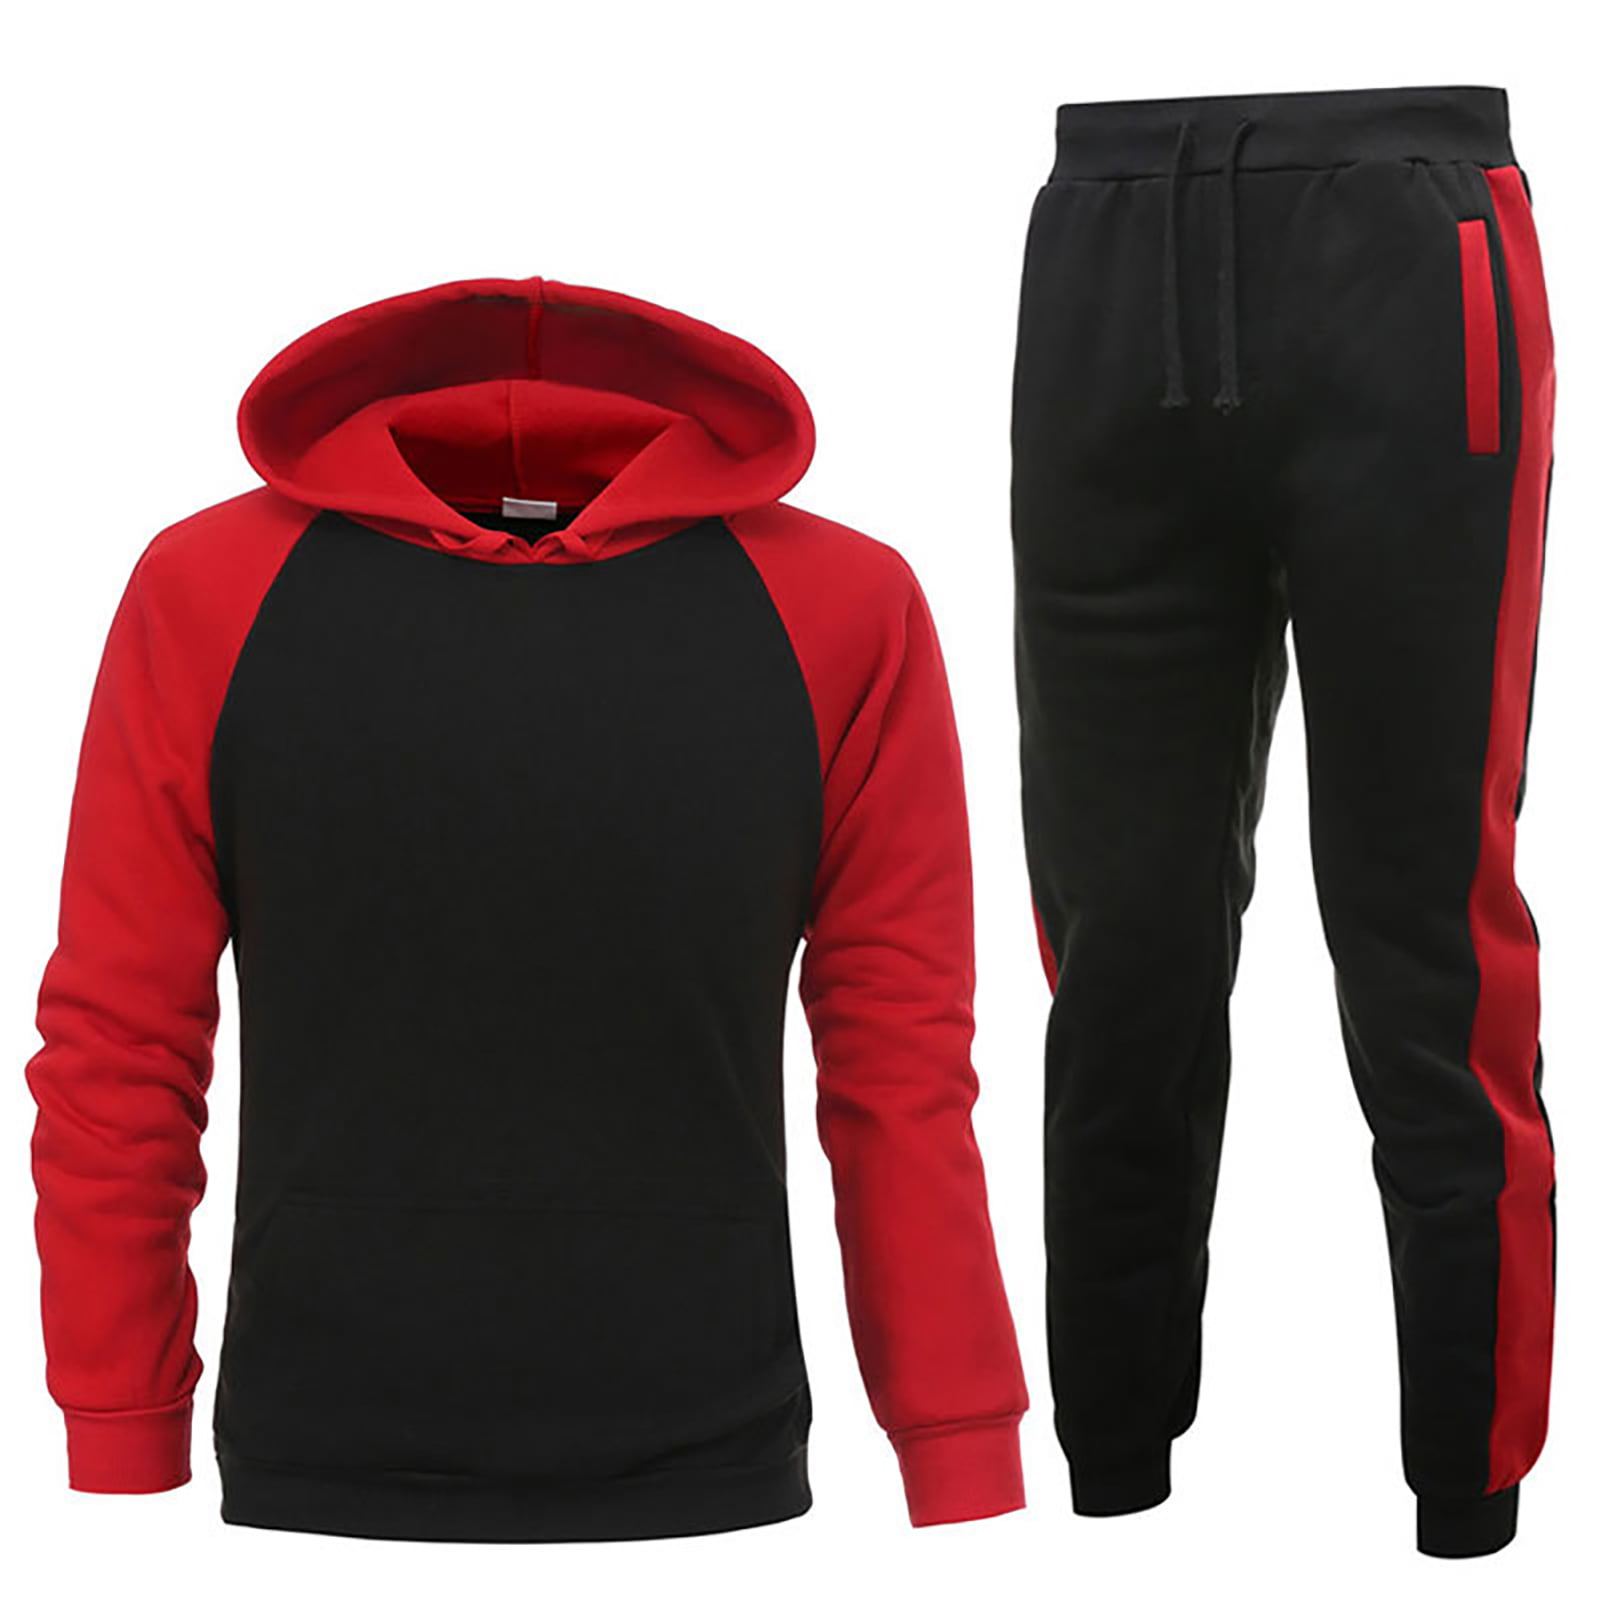 Details about   Men's Spring Long-sleeved Shirt Sport Graphic Jogging Suit Gel Pad Pants Suit